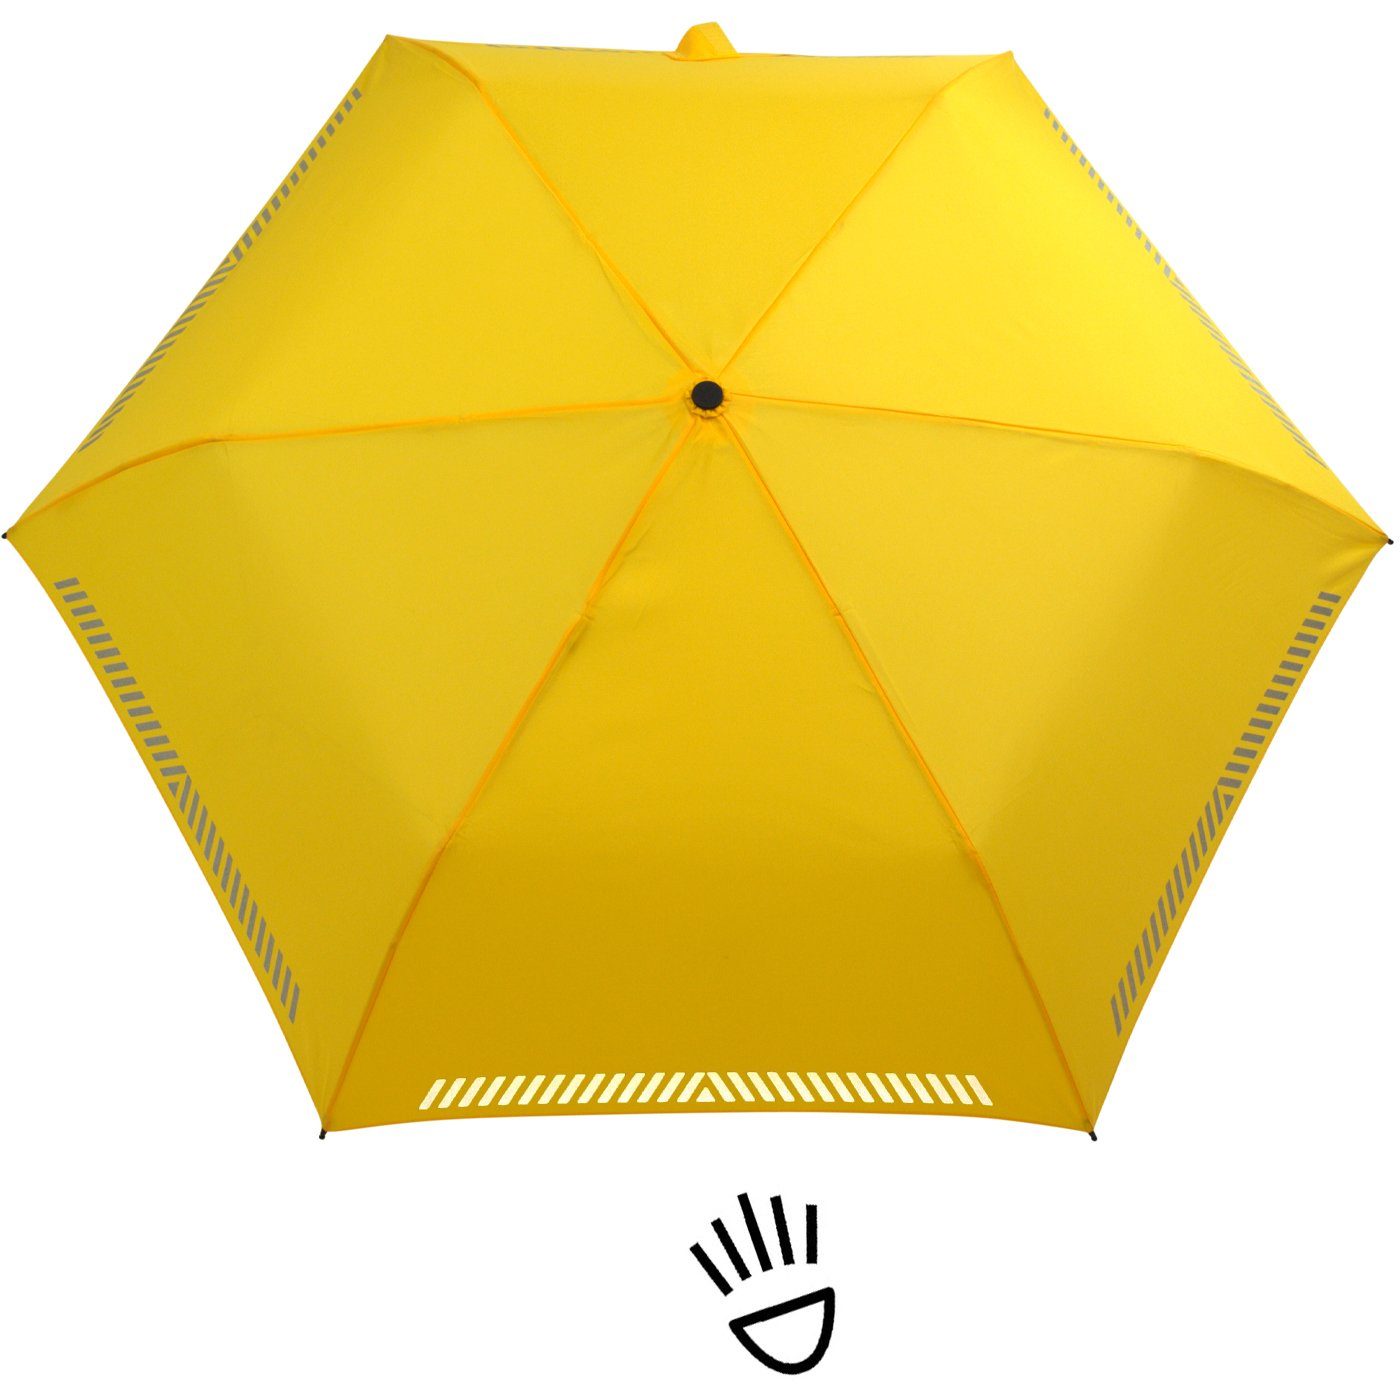 Auf-Zu-Automatik, Reflex-Streifen gelb Kinderschirm - durch Sicherheit Taschenregenschirm iX-brella mit reflektierend,